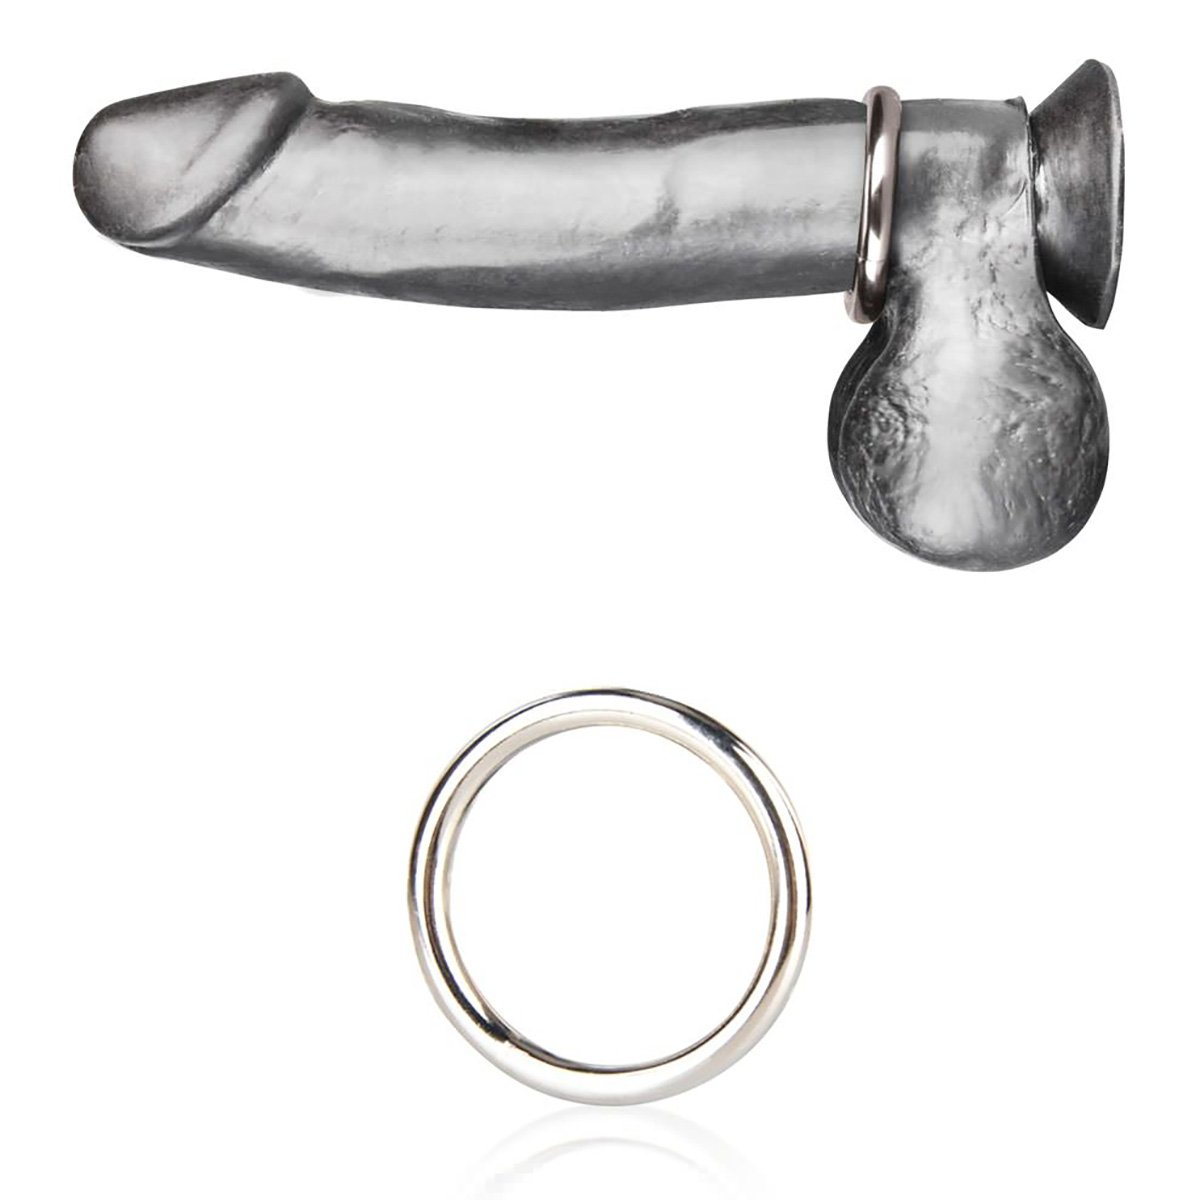 Стальное эрекционное кольцо BlueLine Steel Cock Ring 3,5 см